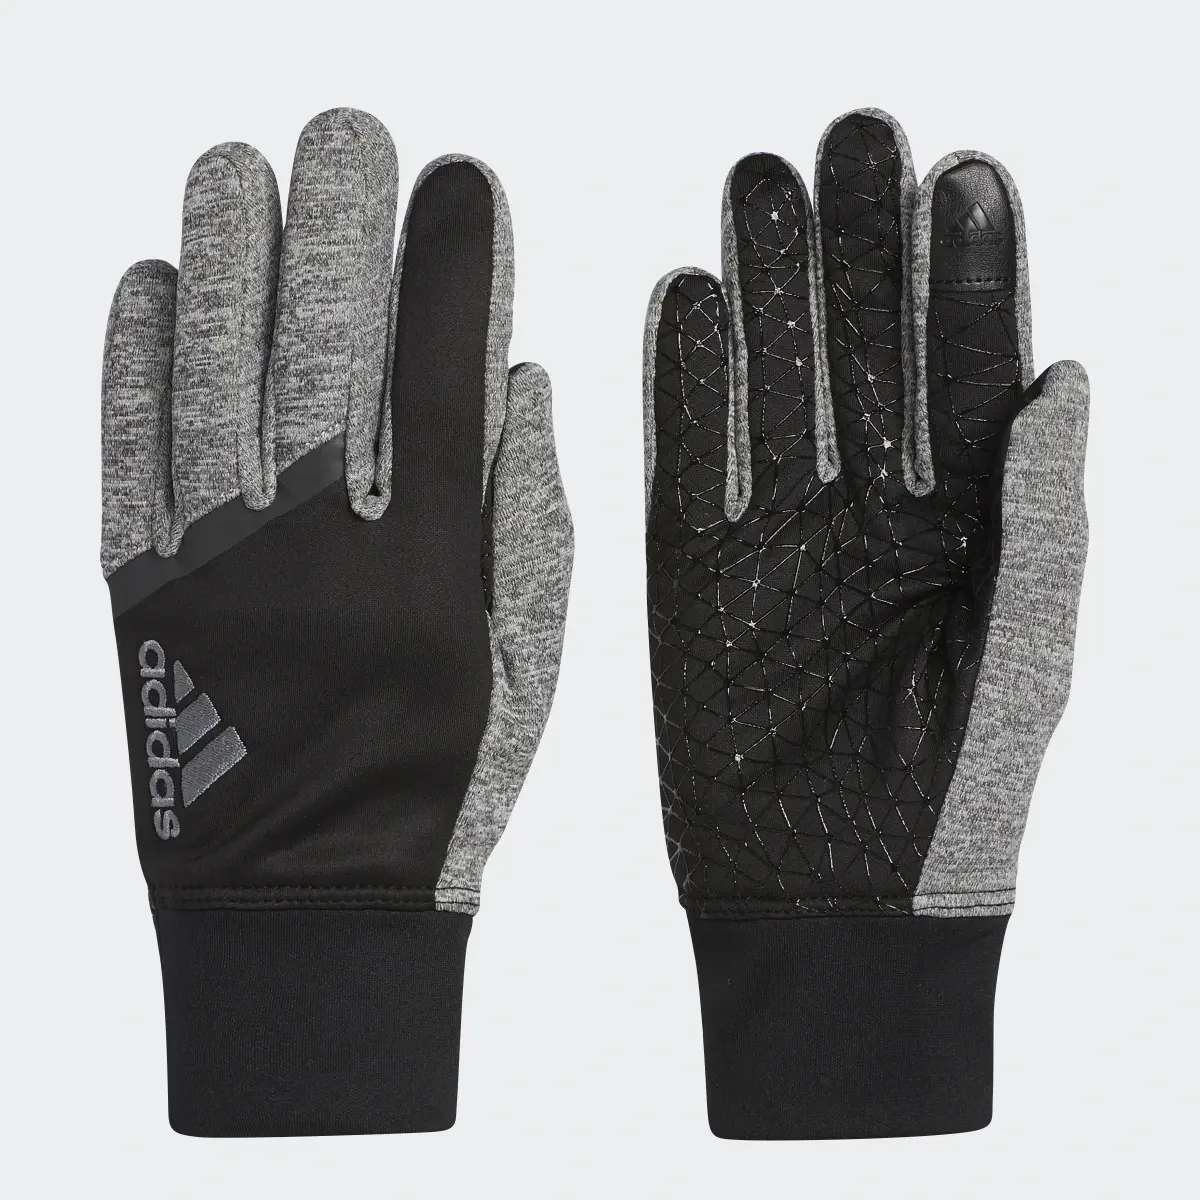 Adidas Go Gloves. 2